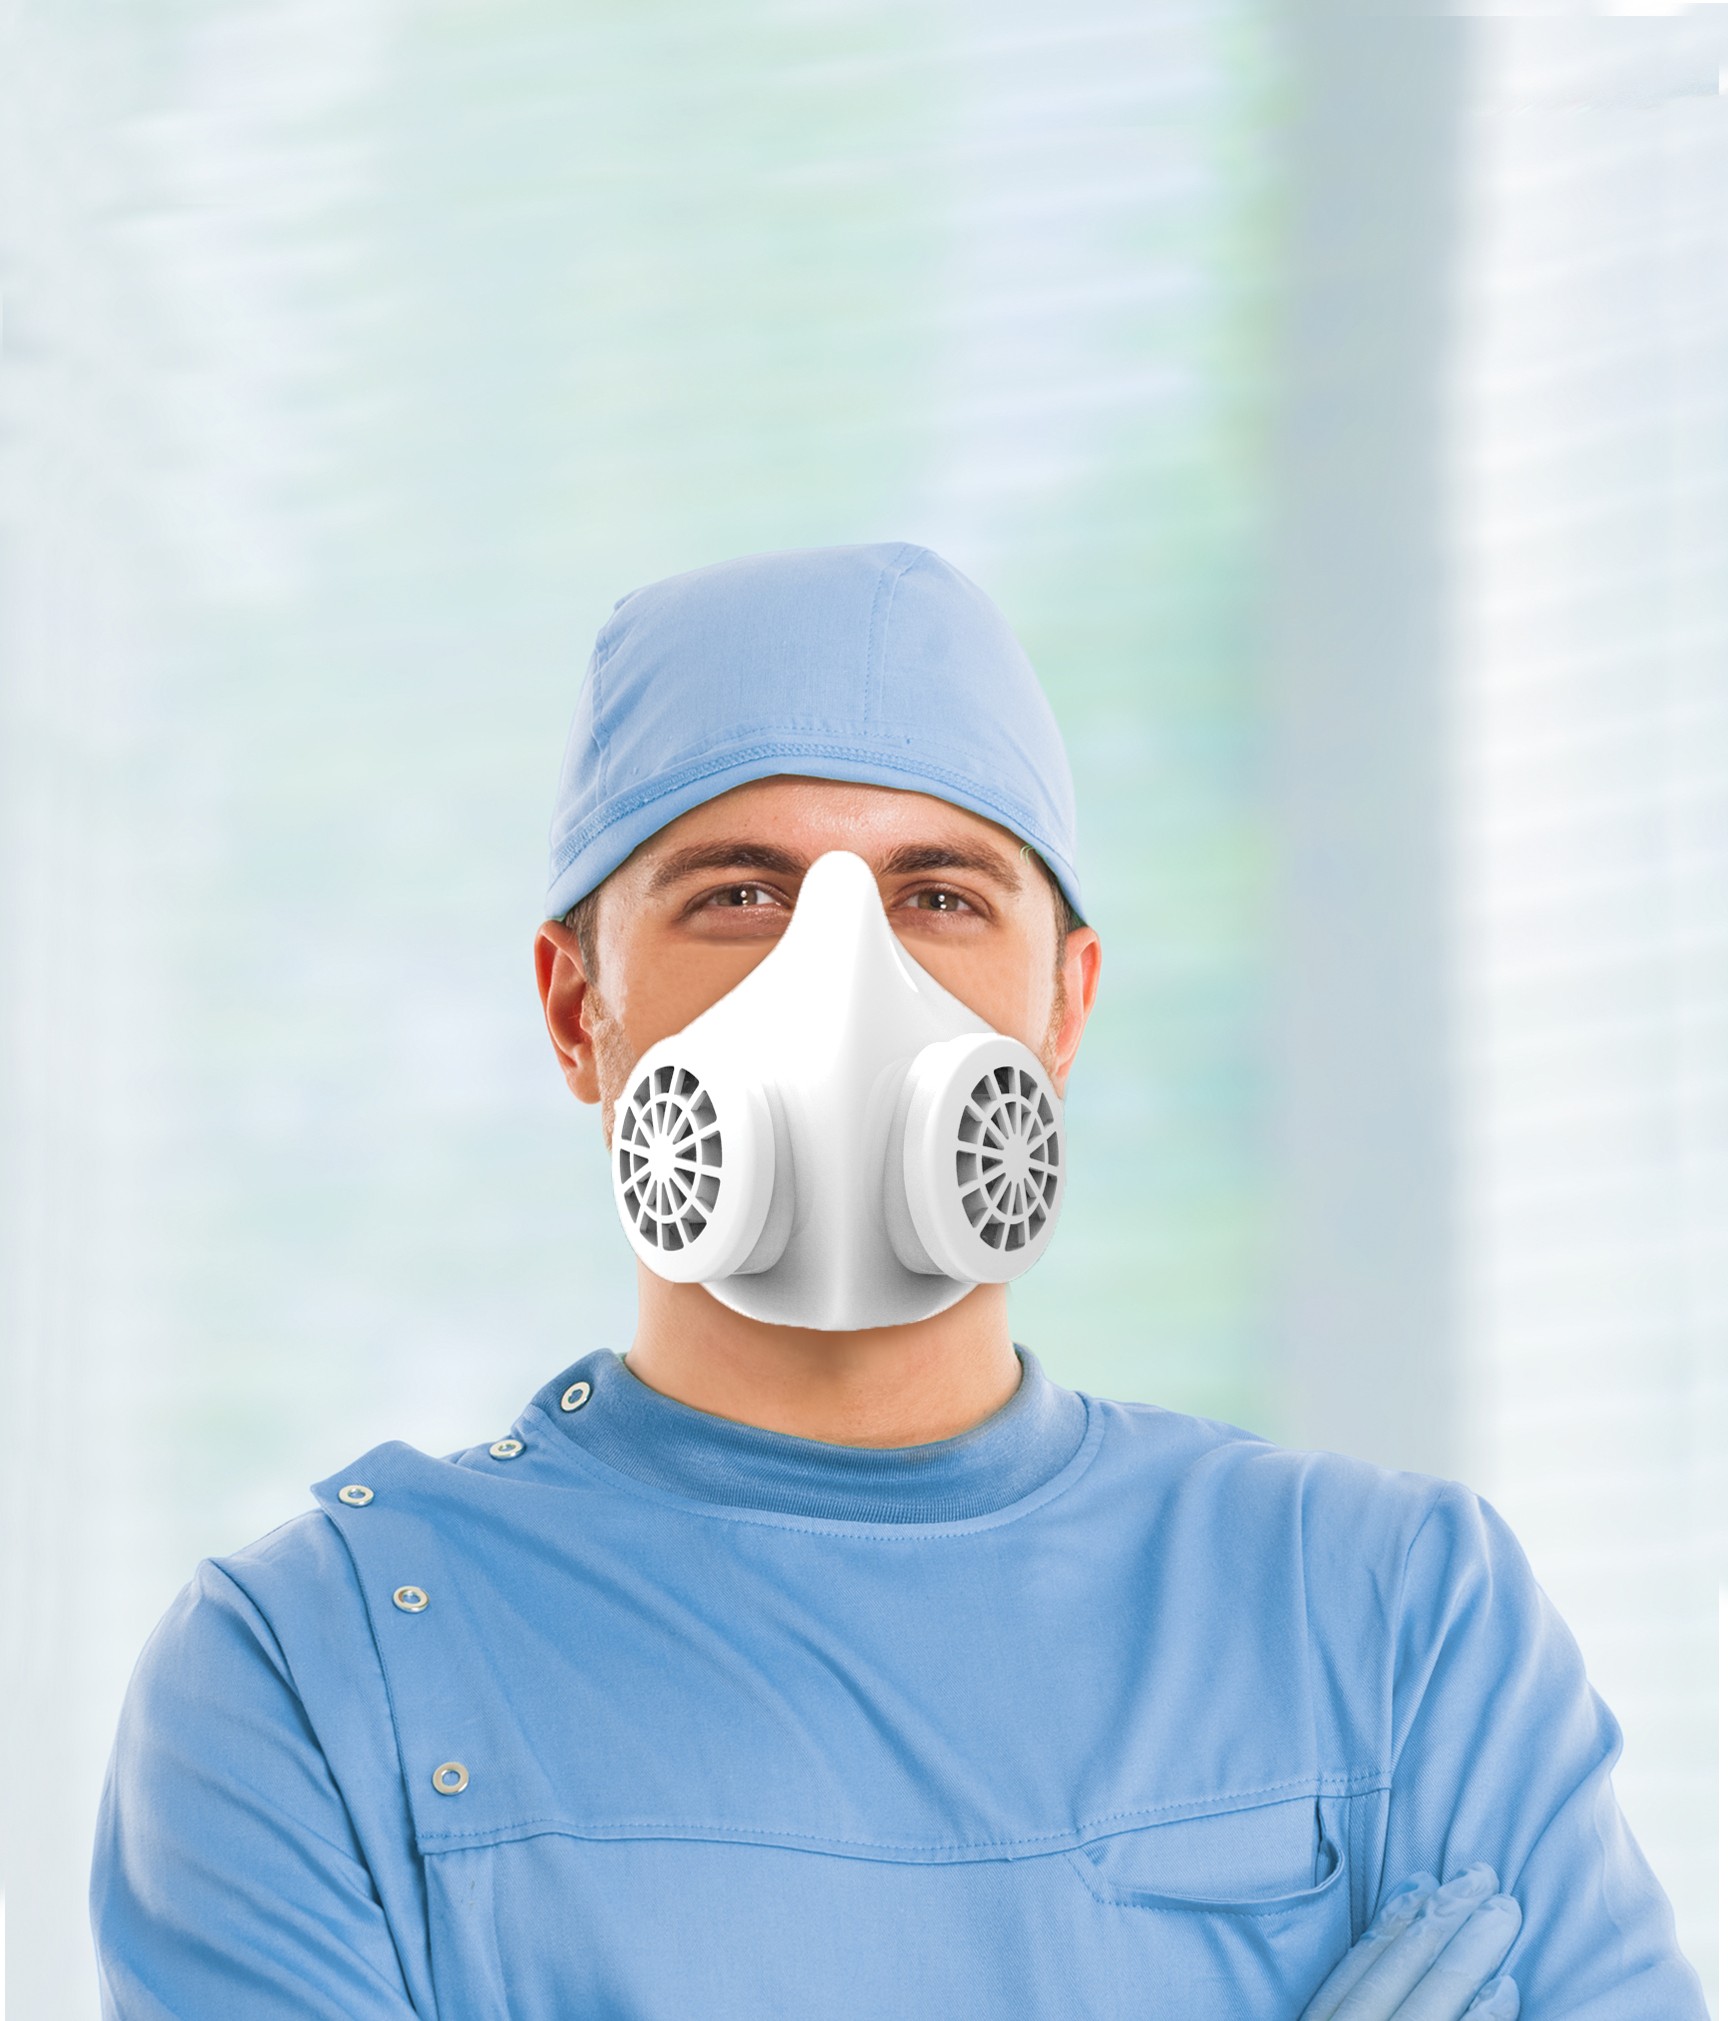 Máscara desenvolvida por startups é reutilizável e oferece maior proteção contra novo coronavírus (Foto: Divulgação)